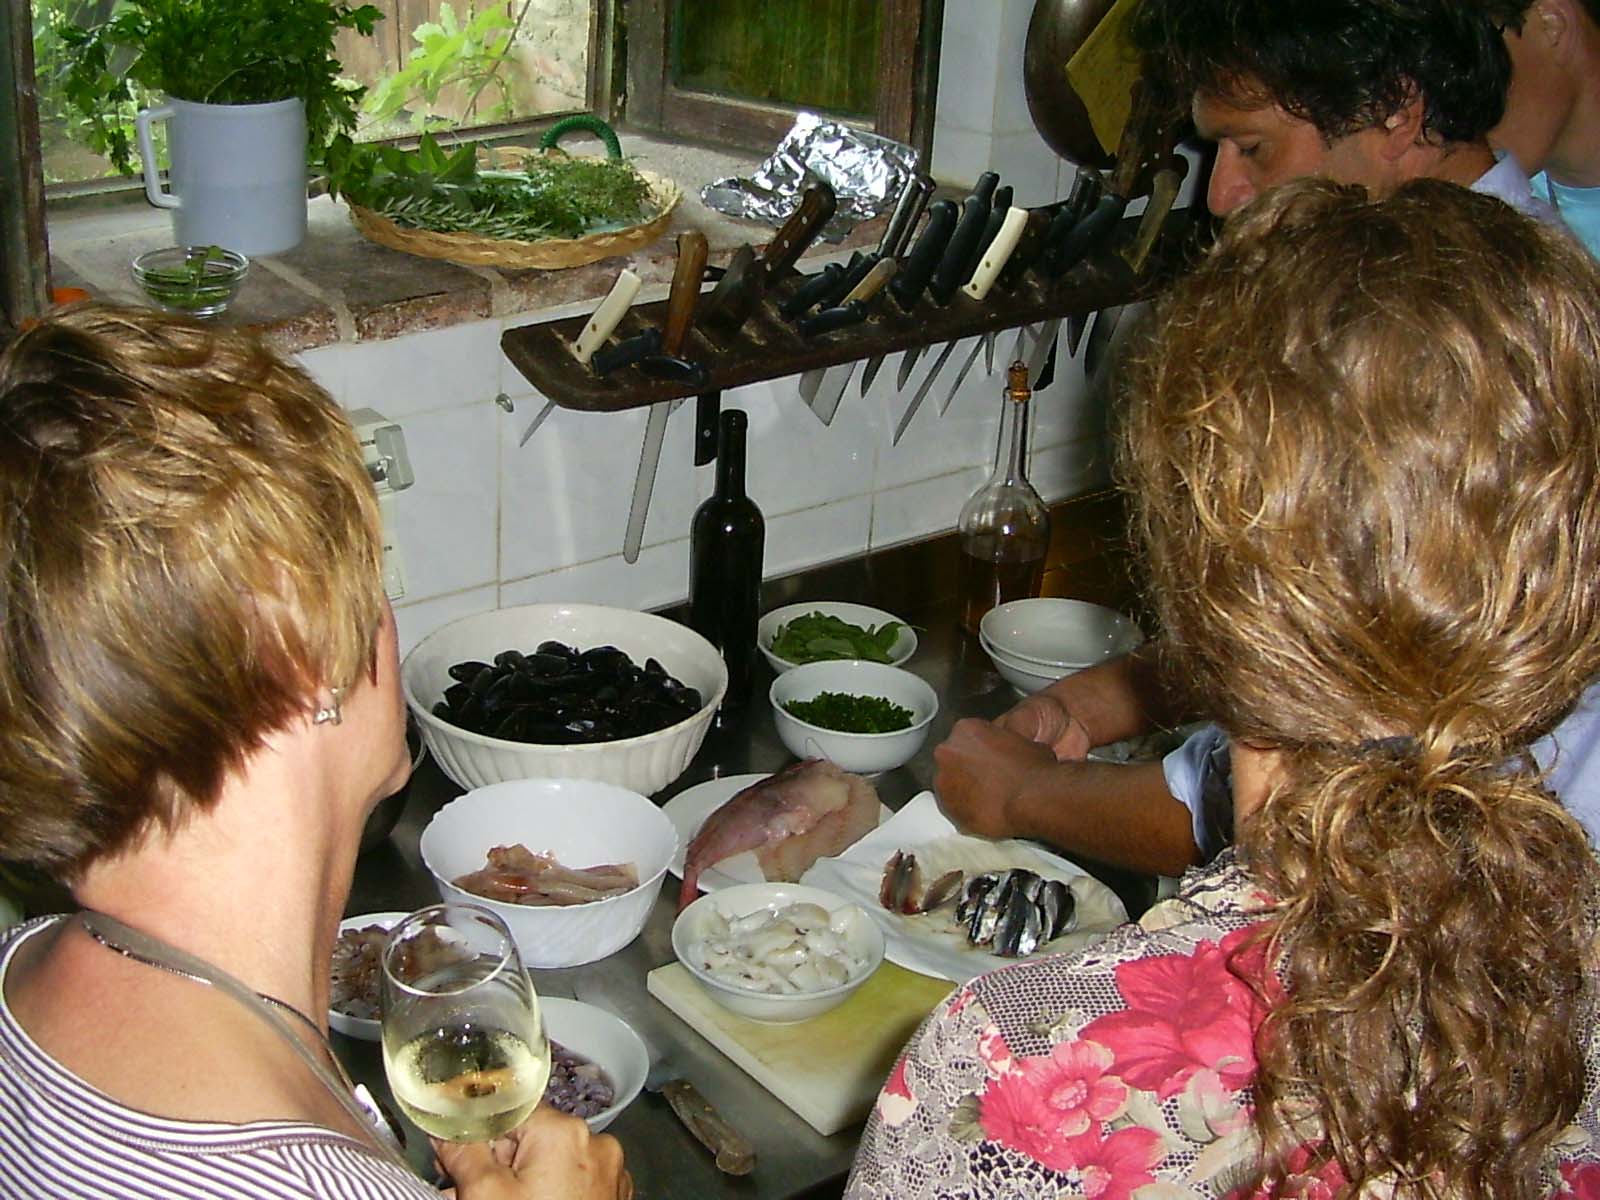 Kooklessen met geweldig eten en wijnen worden geserveerd